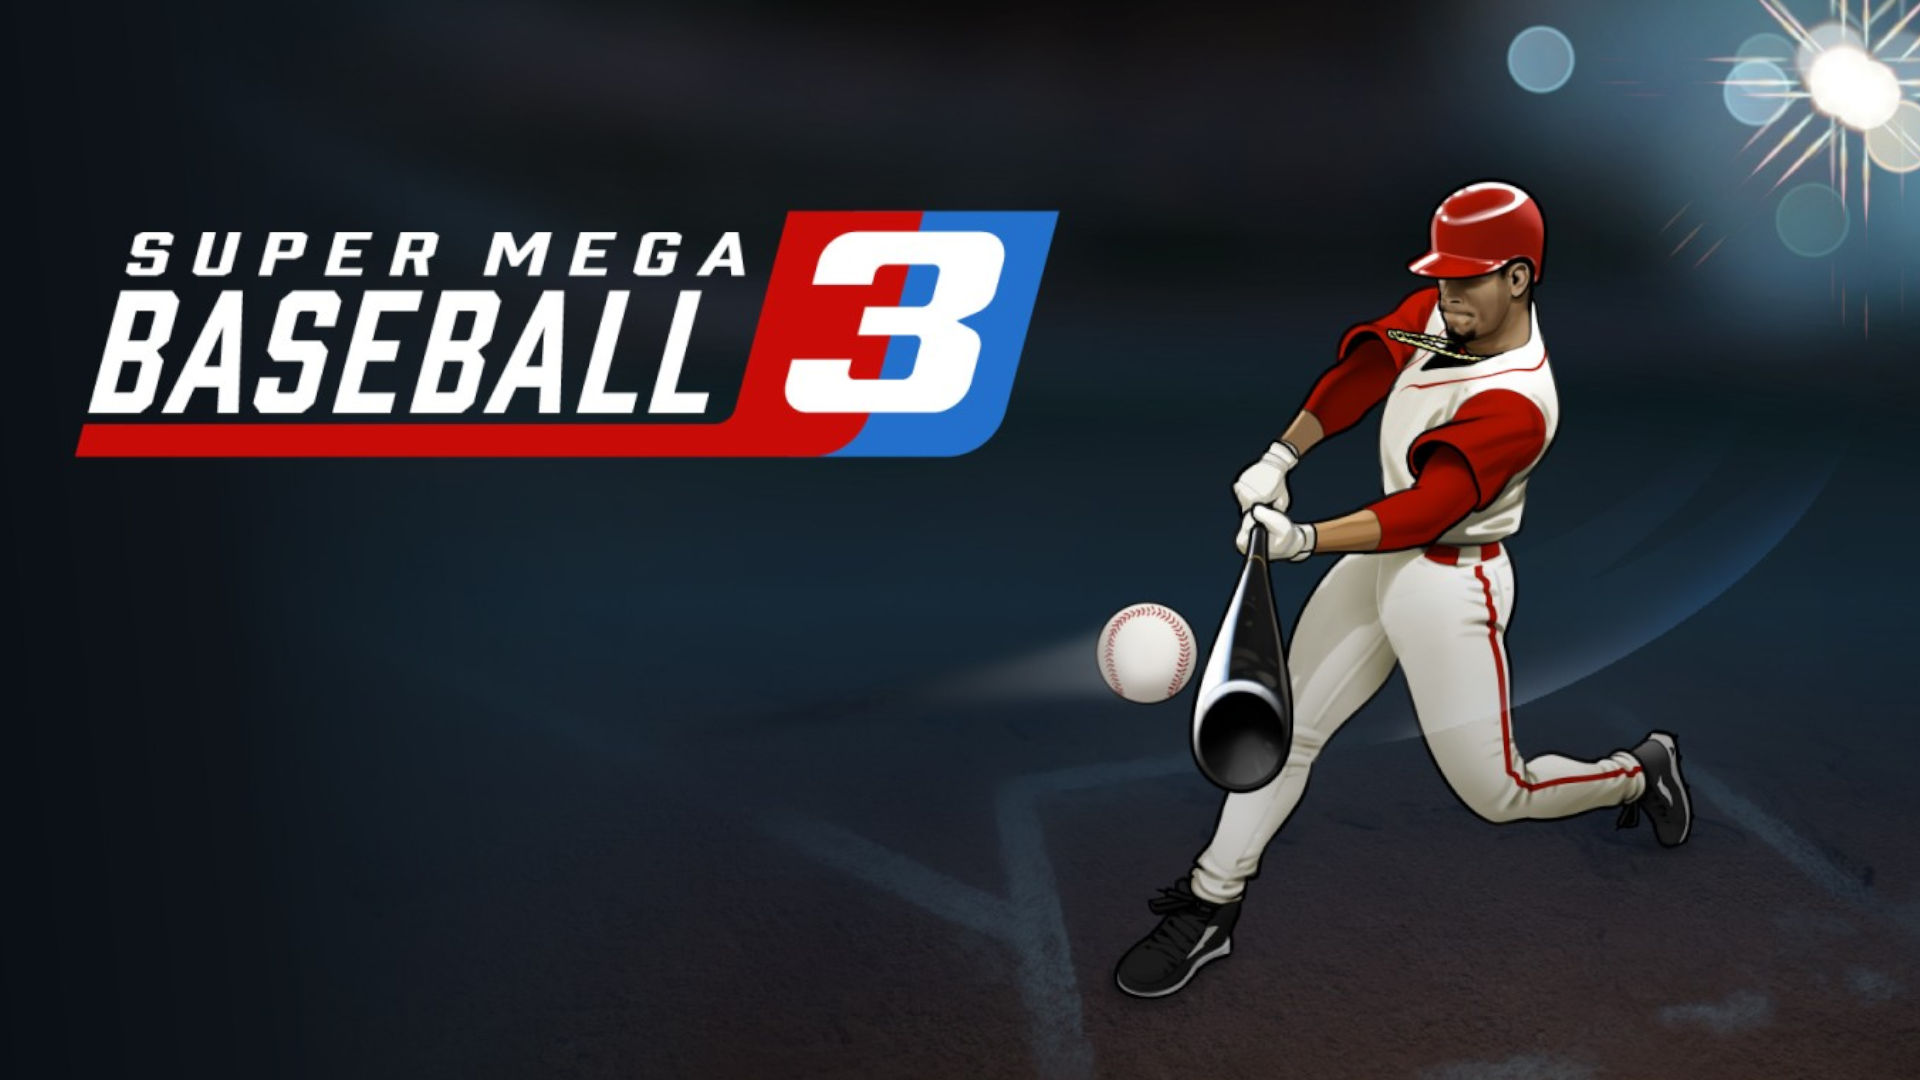 Cover art for Super Mega Baseball 3, one of the best baseball sims on Switch